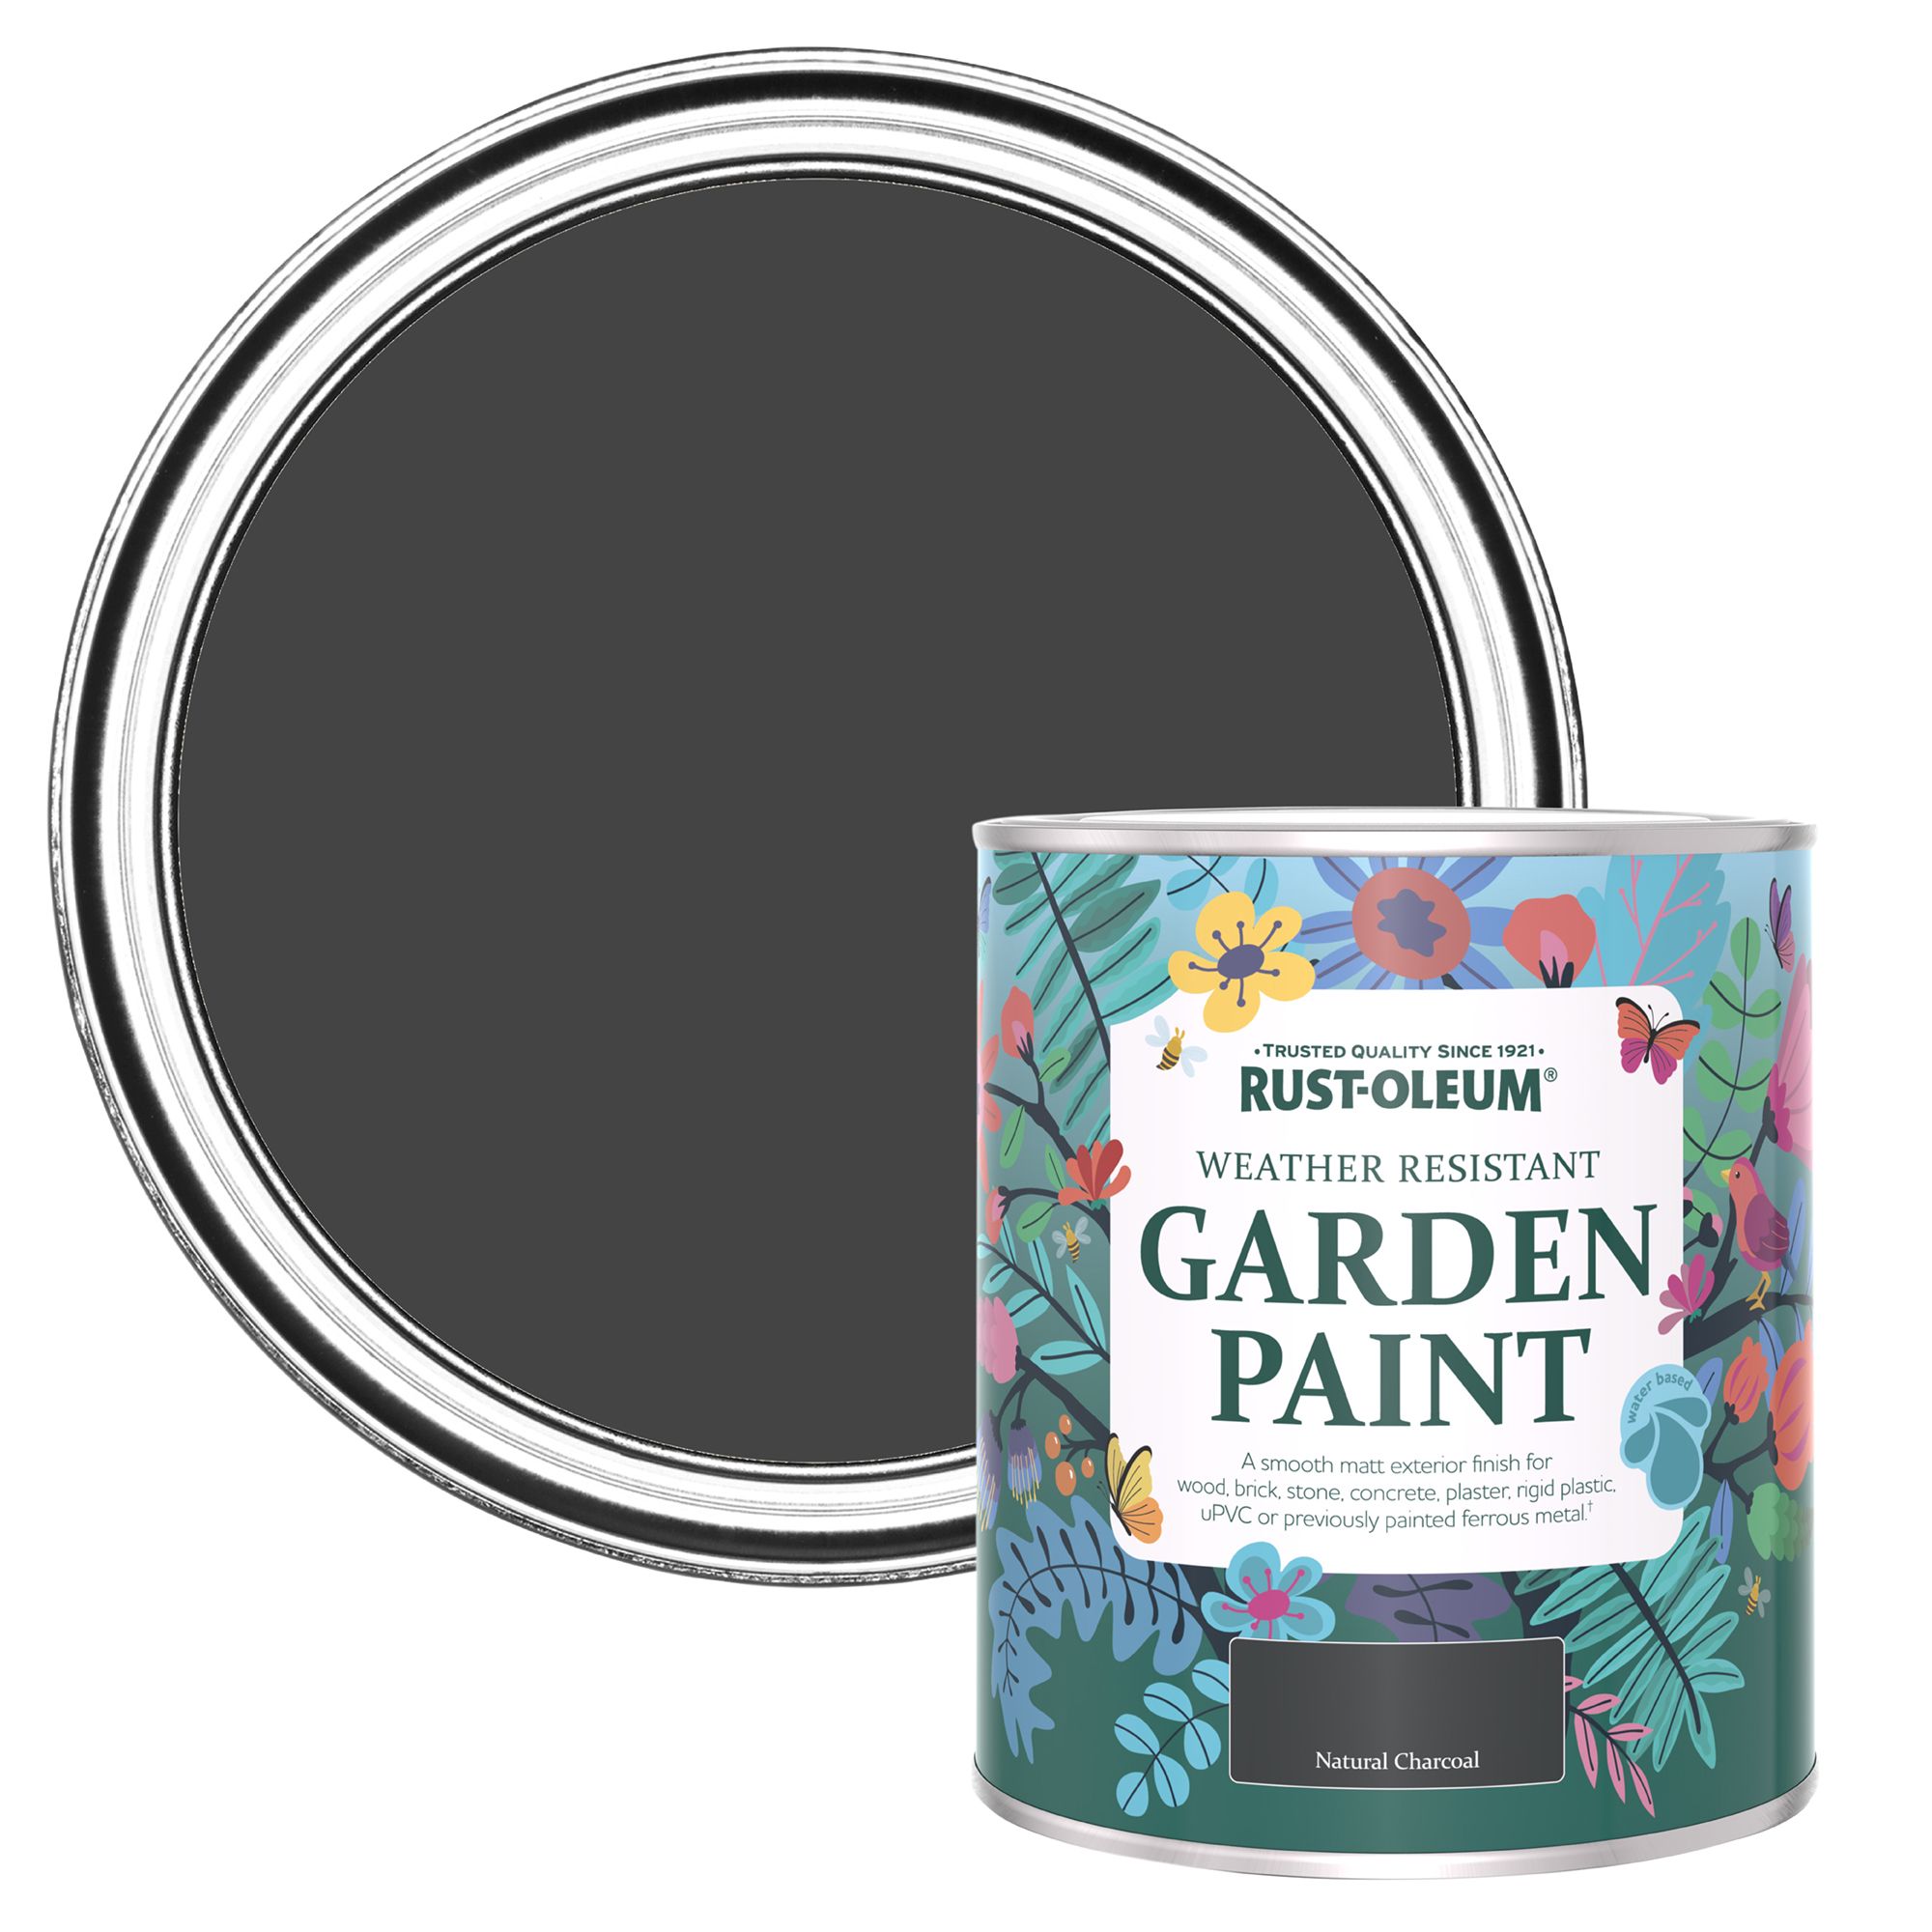 Rust-Oleum Garden Paint Natural Charcoal Matt Multi-surface Garden Paint, 750ml Tin